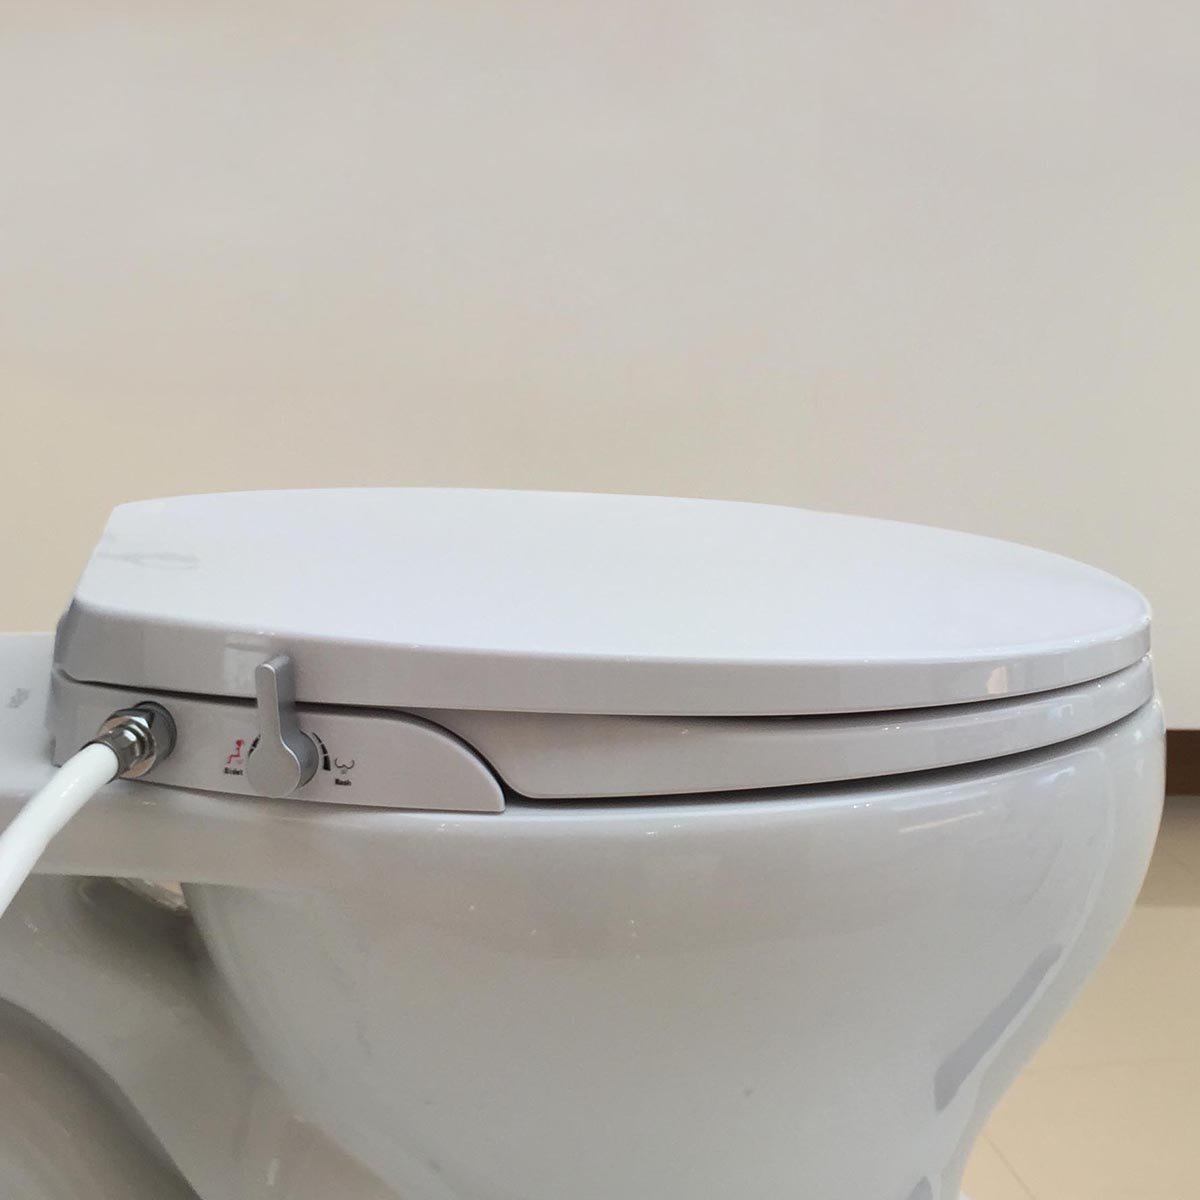 Les fonctionnalités des toilettes japonaises - Les Toilettes Japonaises